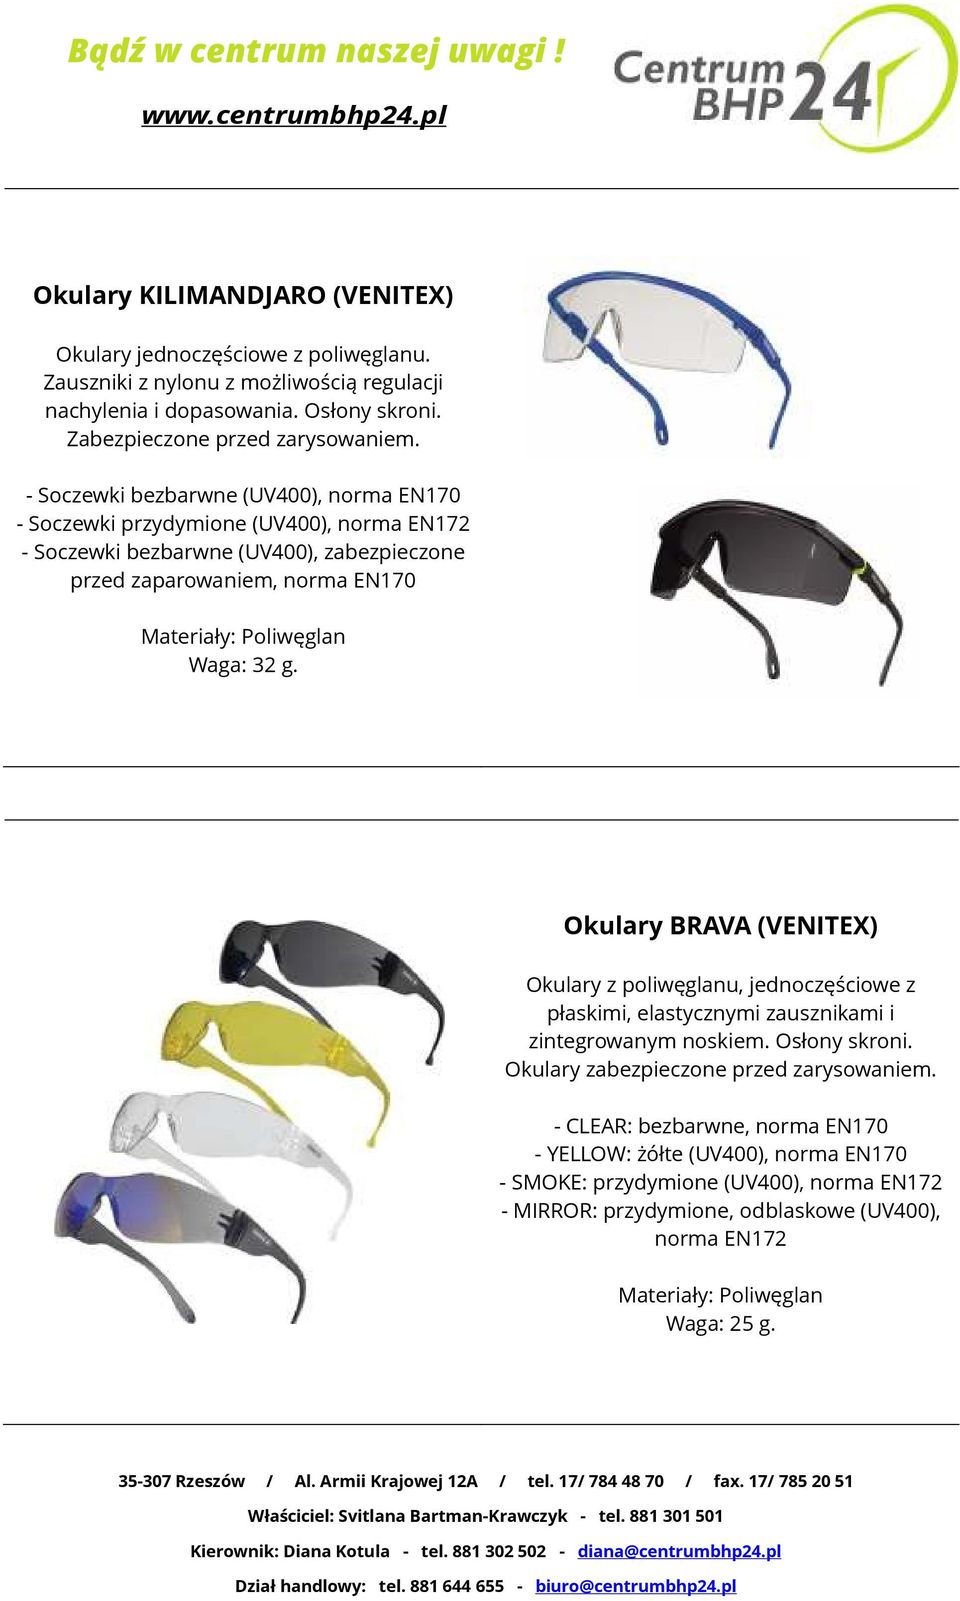 32 g. Okulary BRAVA (VENITEX) Okulary z poliwęglanu, jednoczęściowe z płaskimi, elastycznymi zausznikami i zintegrowanym noskiem. Osłony skroni. Okulary zabezpieczone przed zarysowaniem.